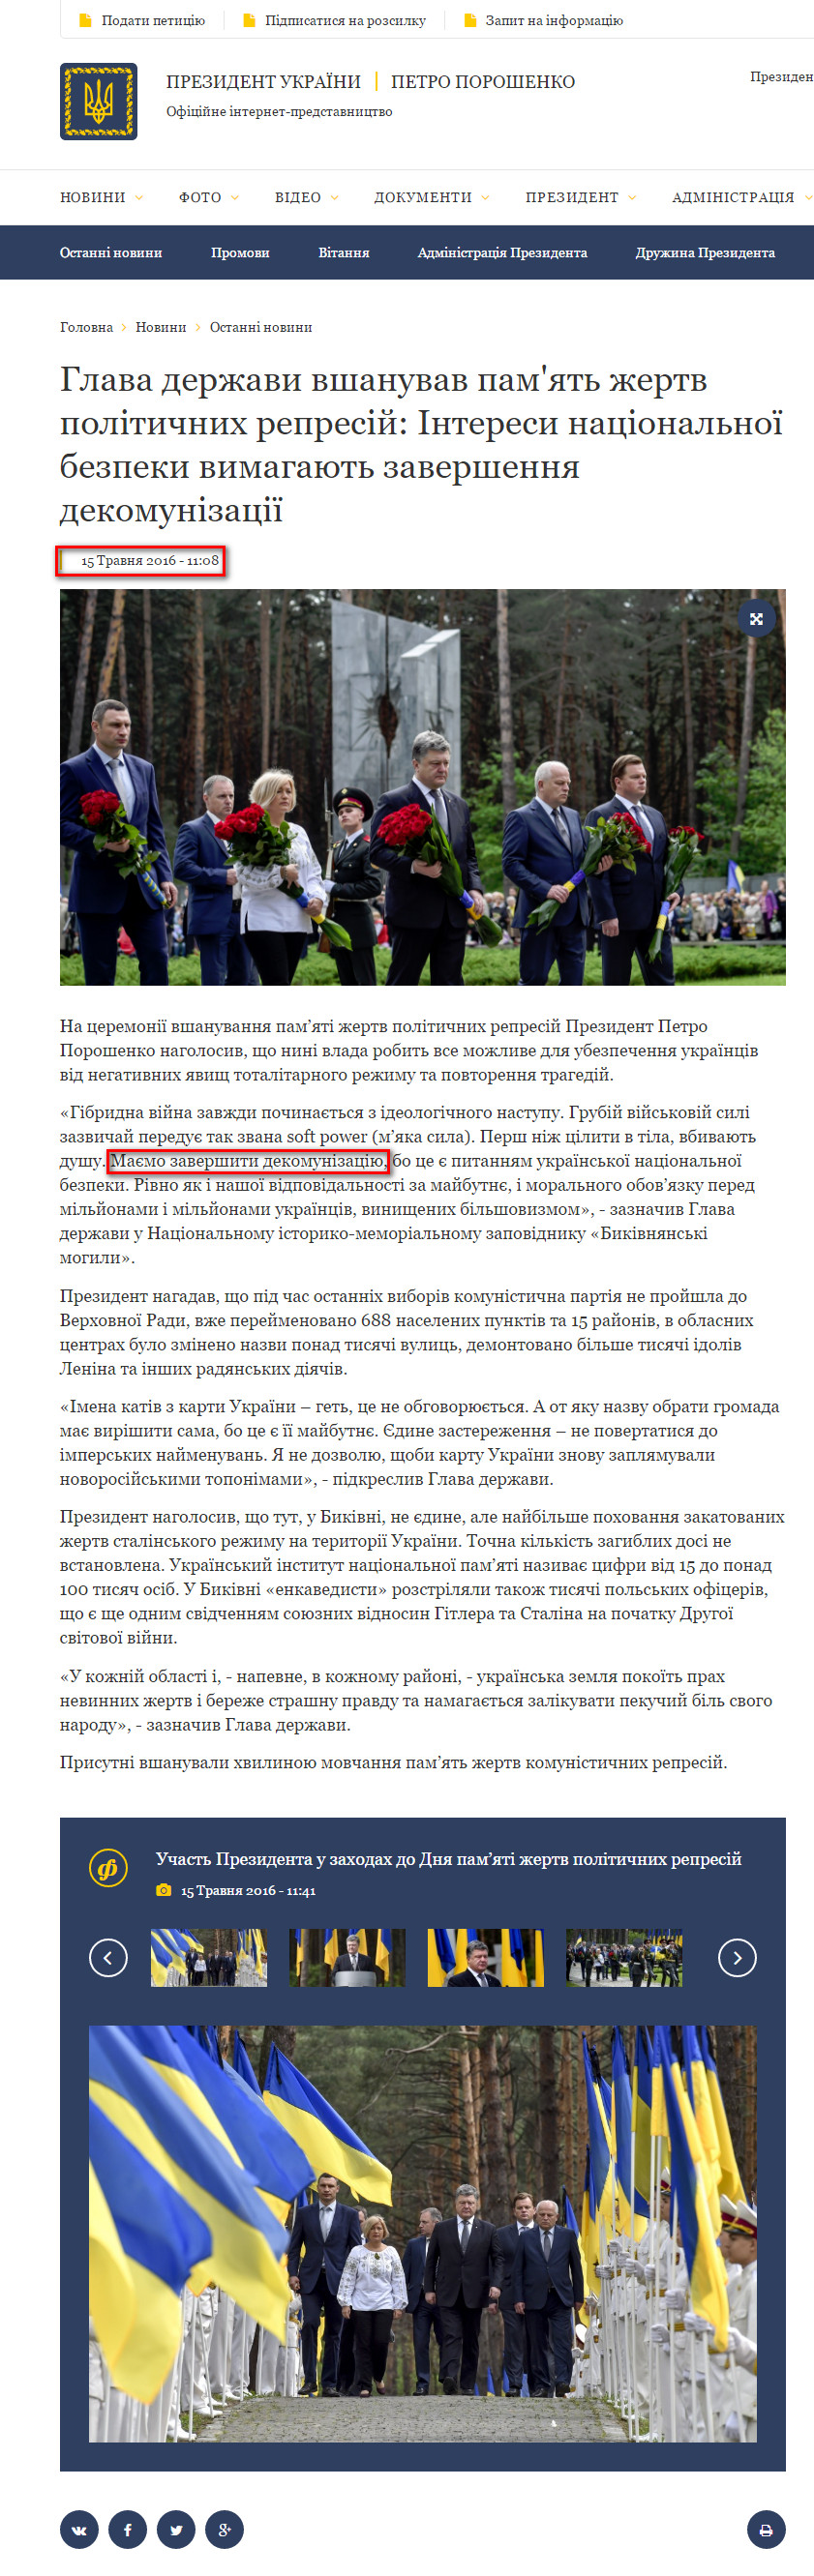 http://kordon.com.ua/podii/16061-dekomunzacya-v-dyi-poroshenko-nakazav-znesti-vs-pamyatniki-lennu.html